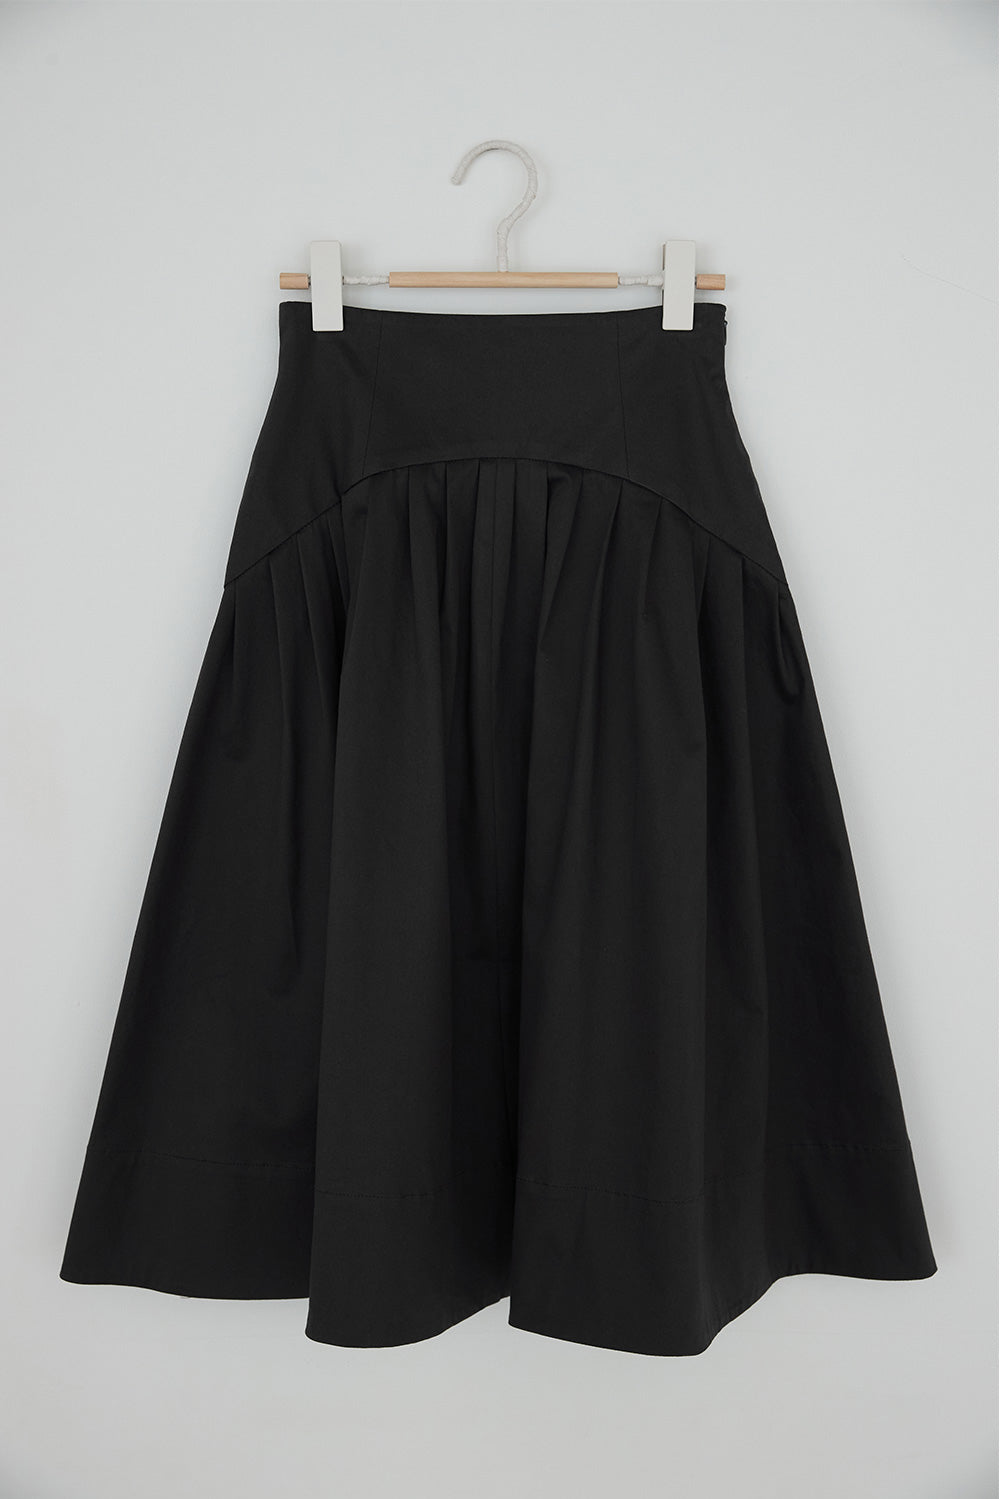 KAIKI Cotton Spandex Flare Skirt Gray